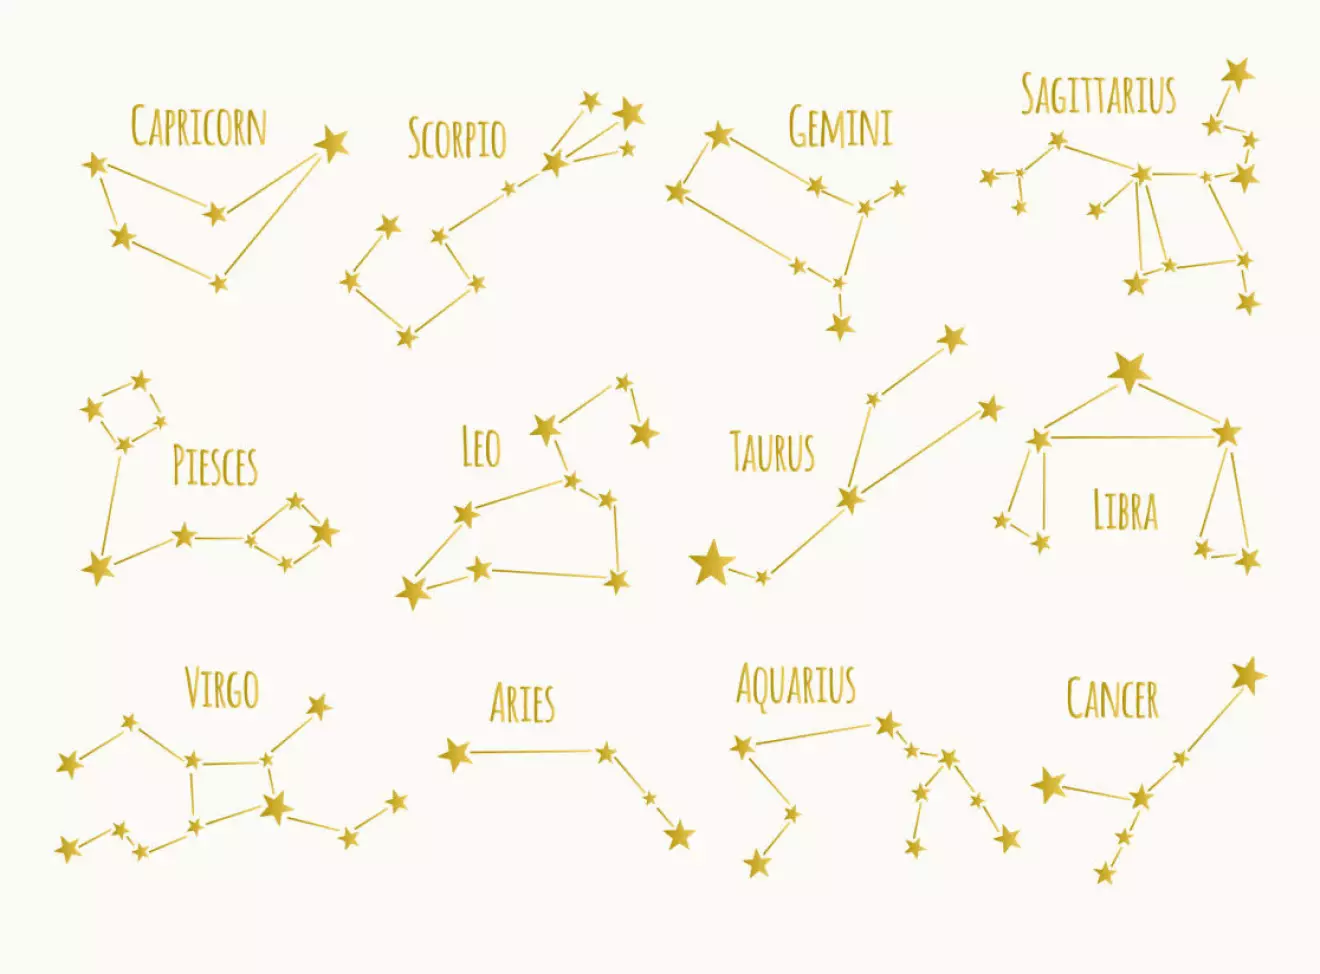 Alla stjärnteckens stjärnbilder – däribland skyttens stjärnbild.